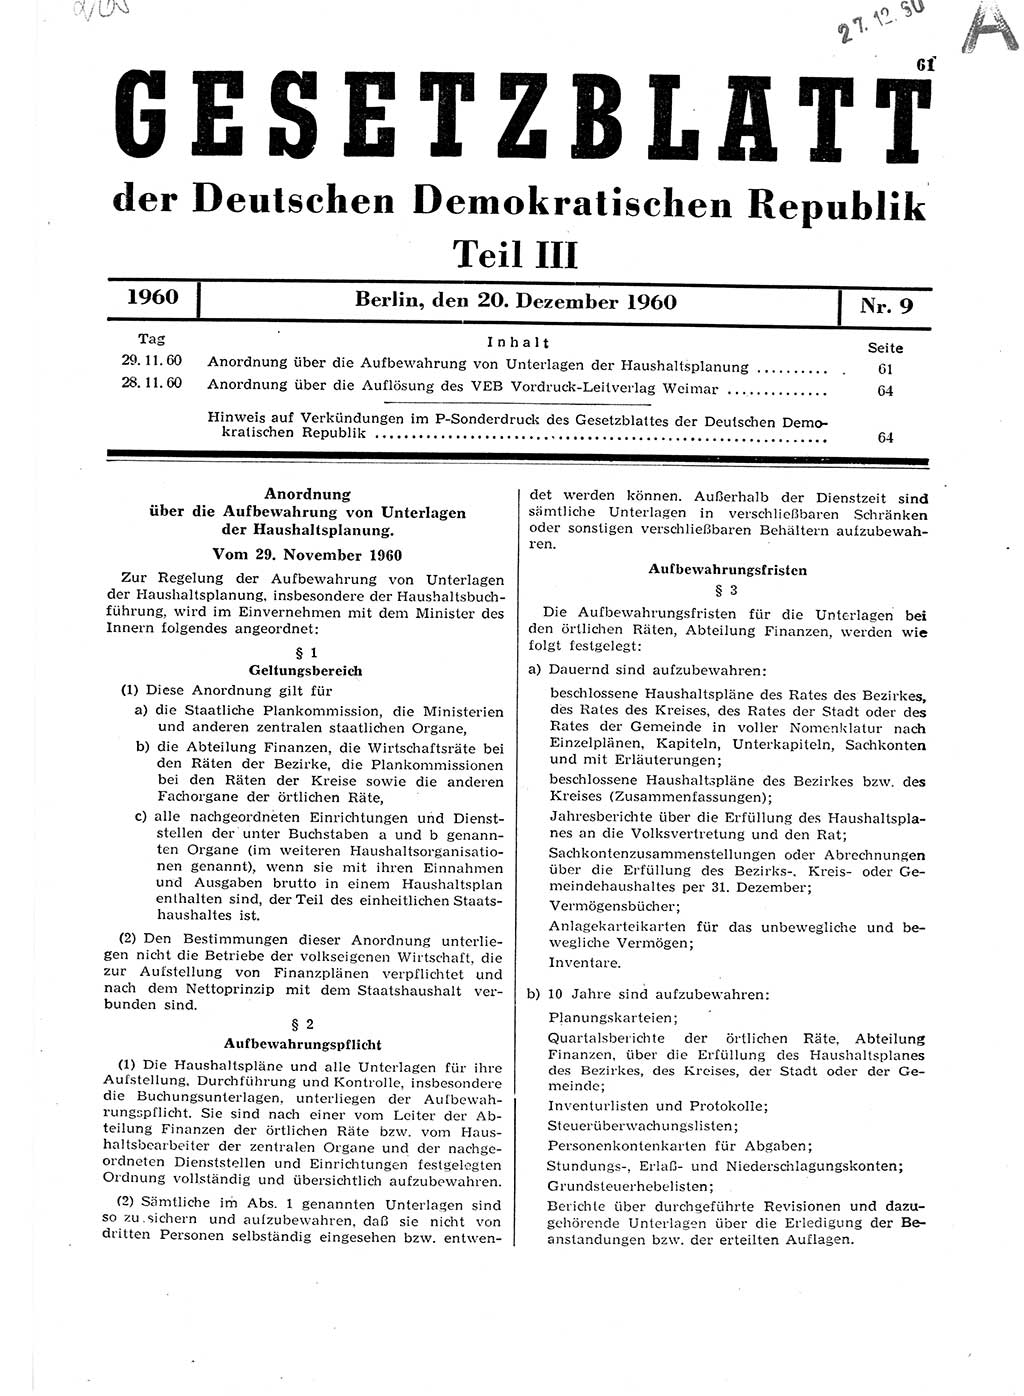 Gesetzblatt (GBl.) der Deutschen Demokratischen Republik (DDR) Teil ⅠⅠⅠ 1960, Seite 61 (GBl. DDR ⅠⅠⅠ 1960, S. 61)